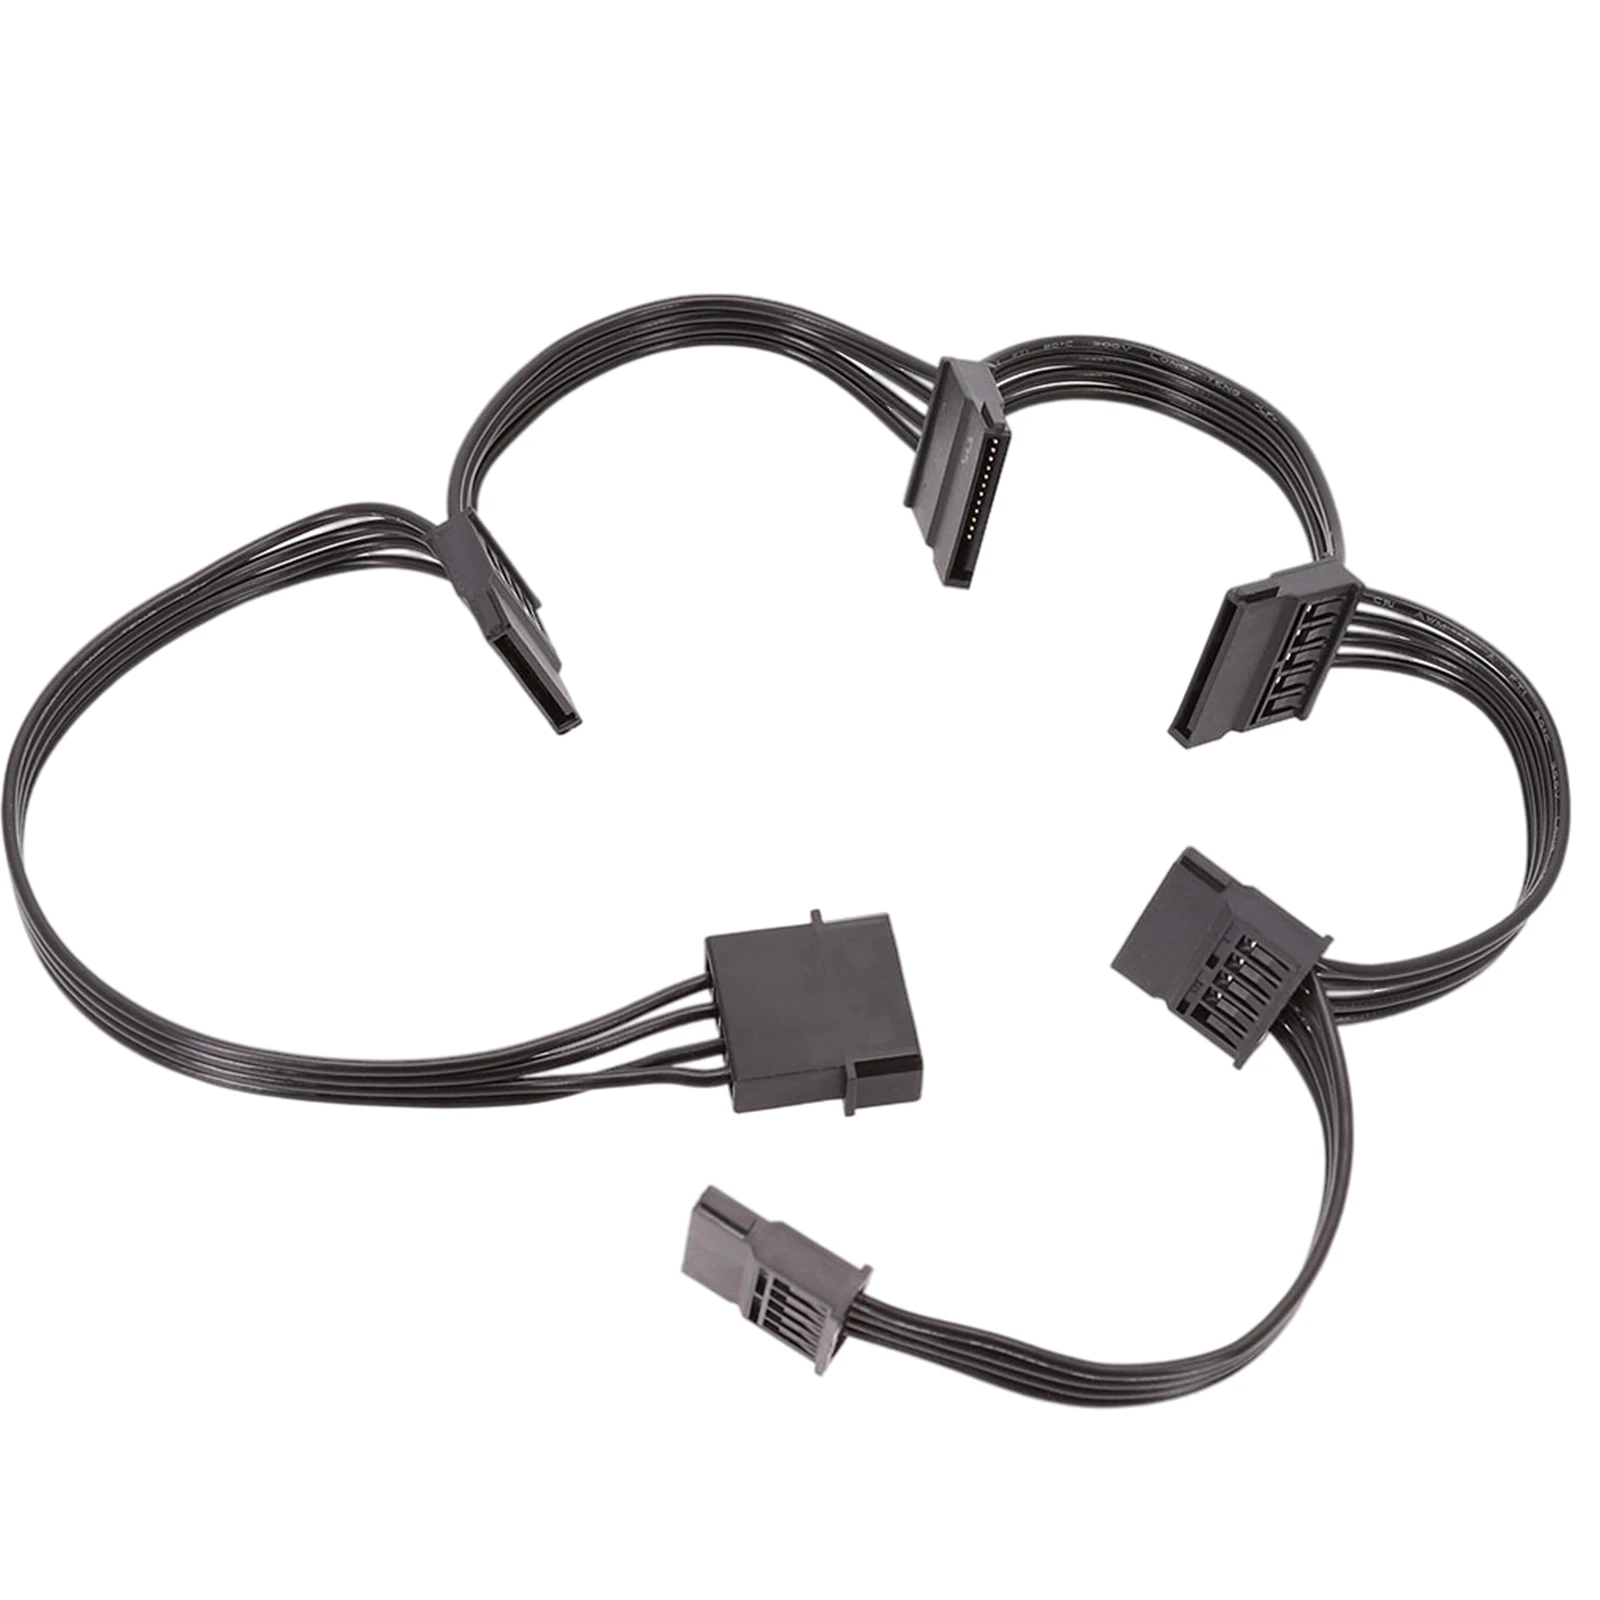 1 шт. 4 Pin SATA кабель питания Расширение от до 5 сплиттер | Компьютеры и офис